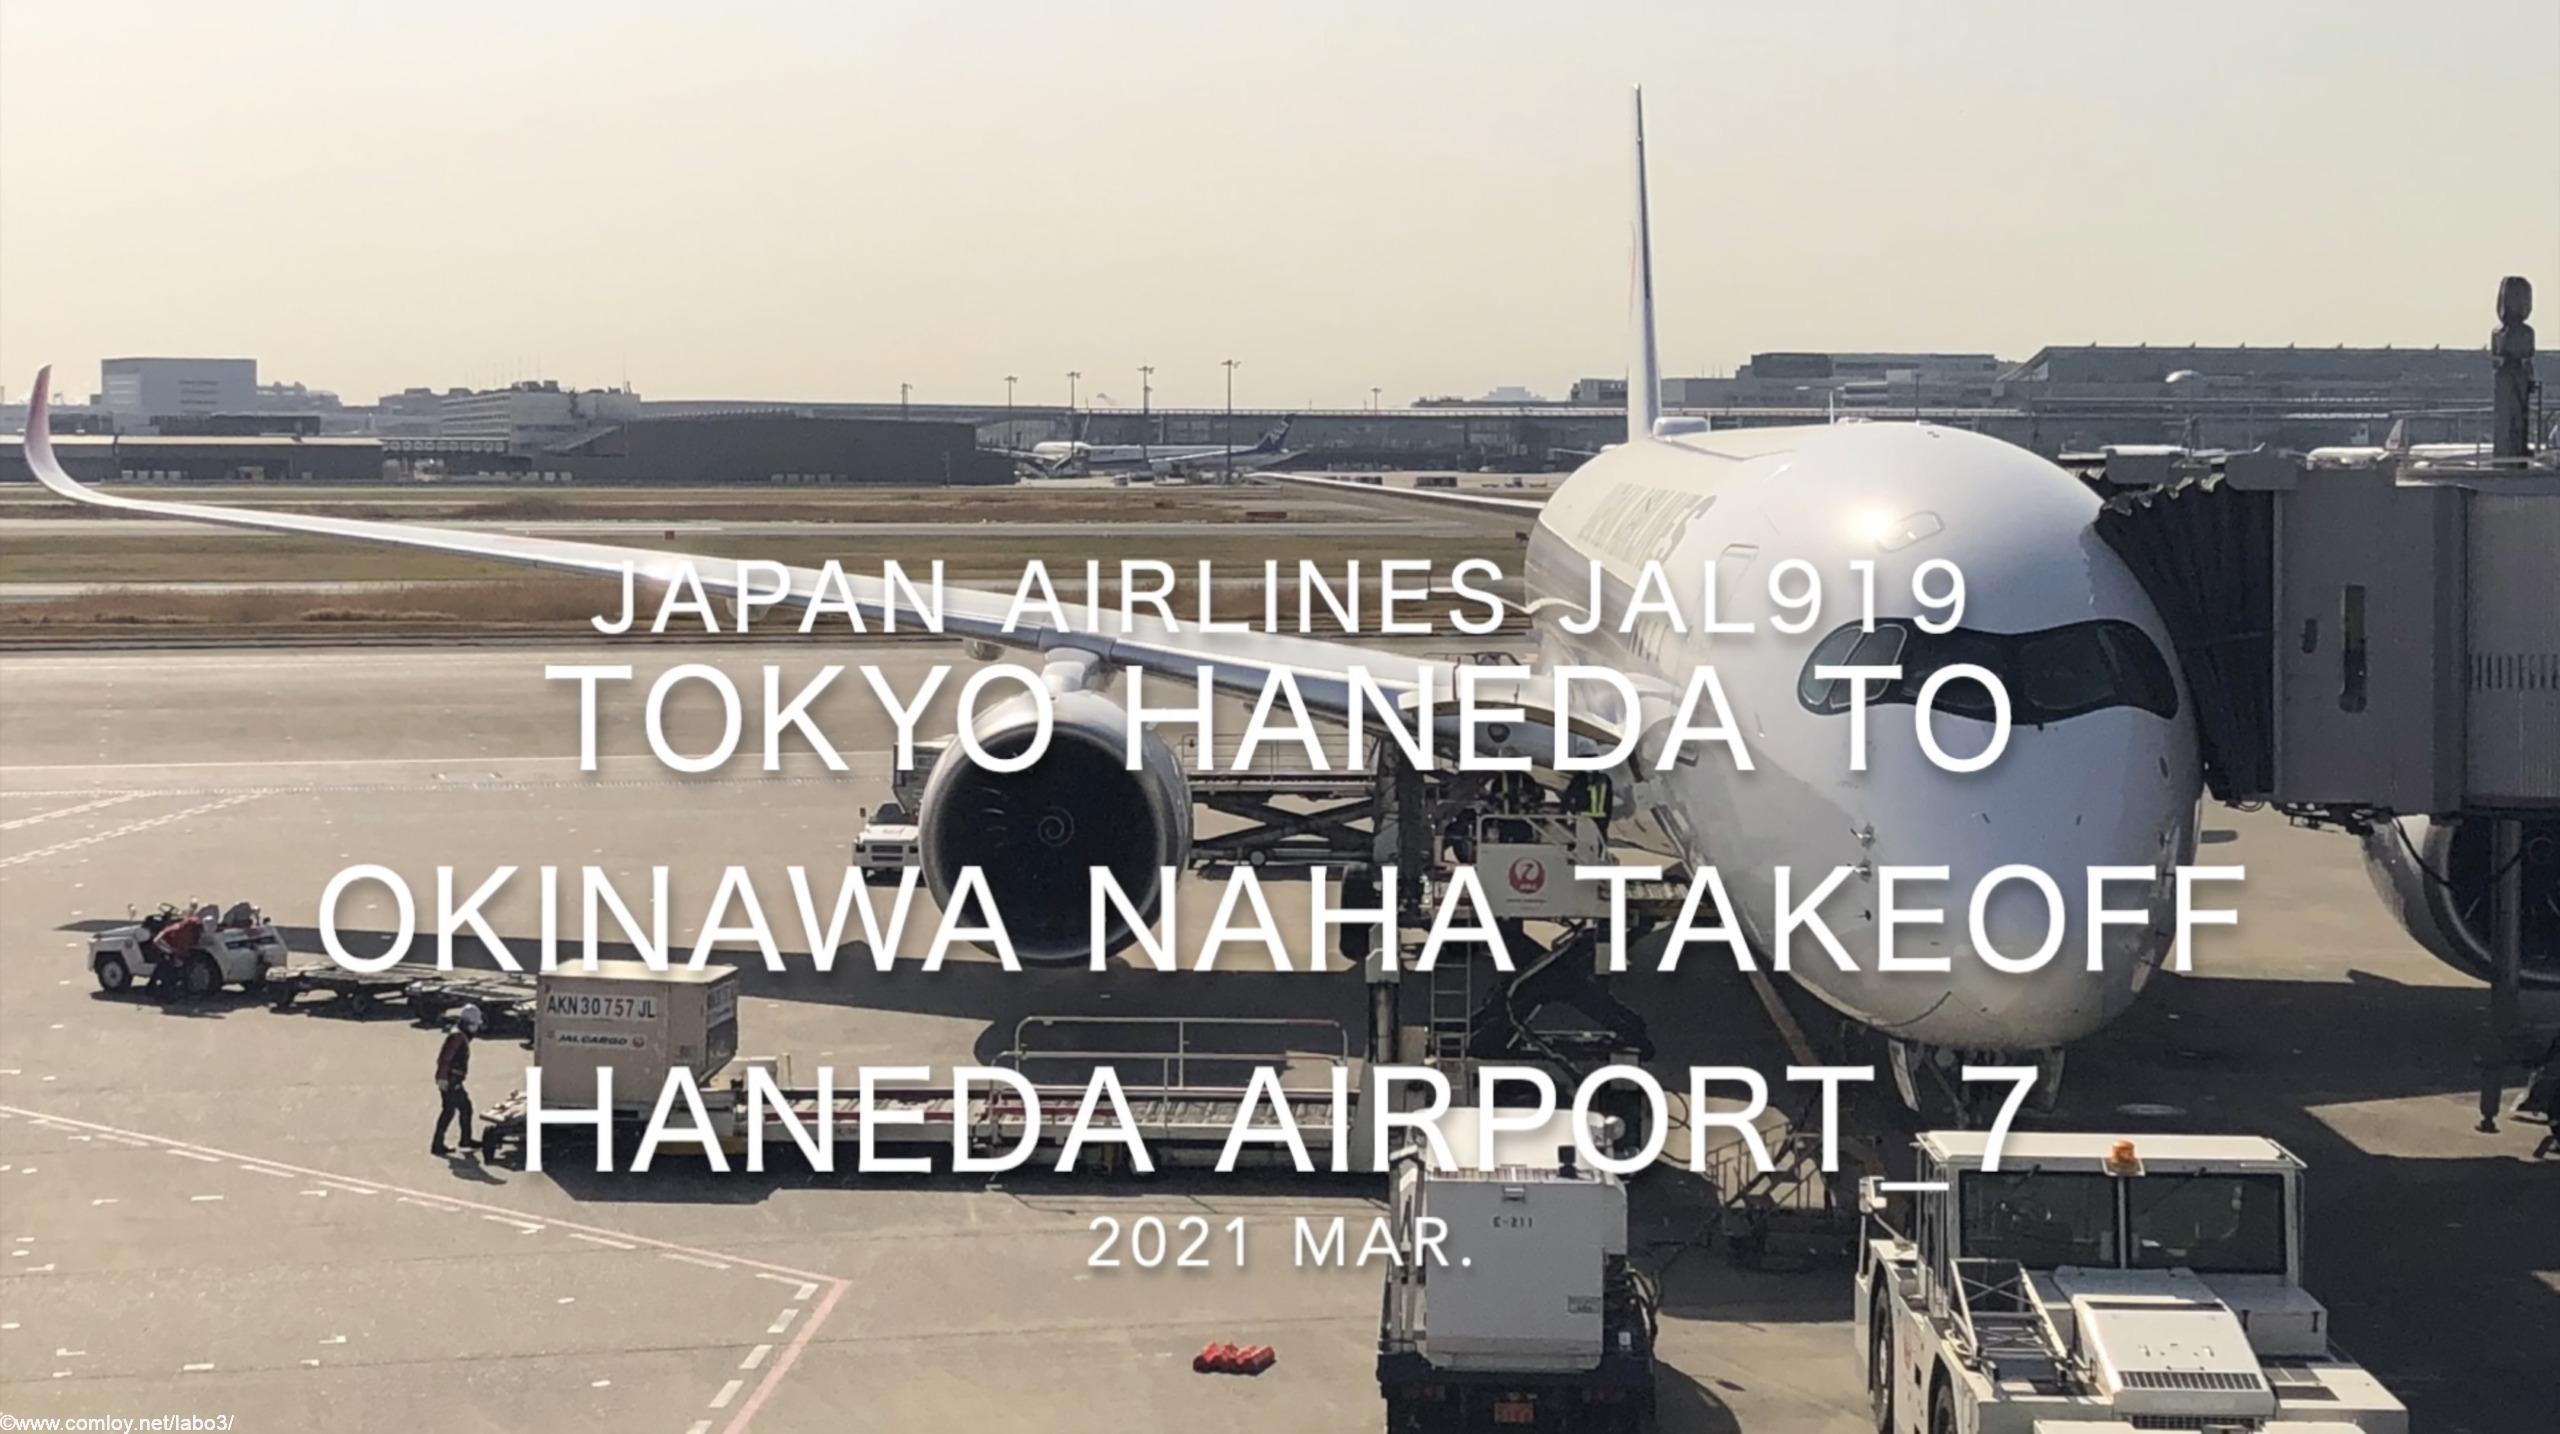 【機内から離着陸映像】2021 Mar Japan Airlines JAL919 TOKYO HANEDA to OKINAWA NAHA Takeoff HANEDA Airport_7